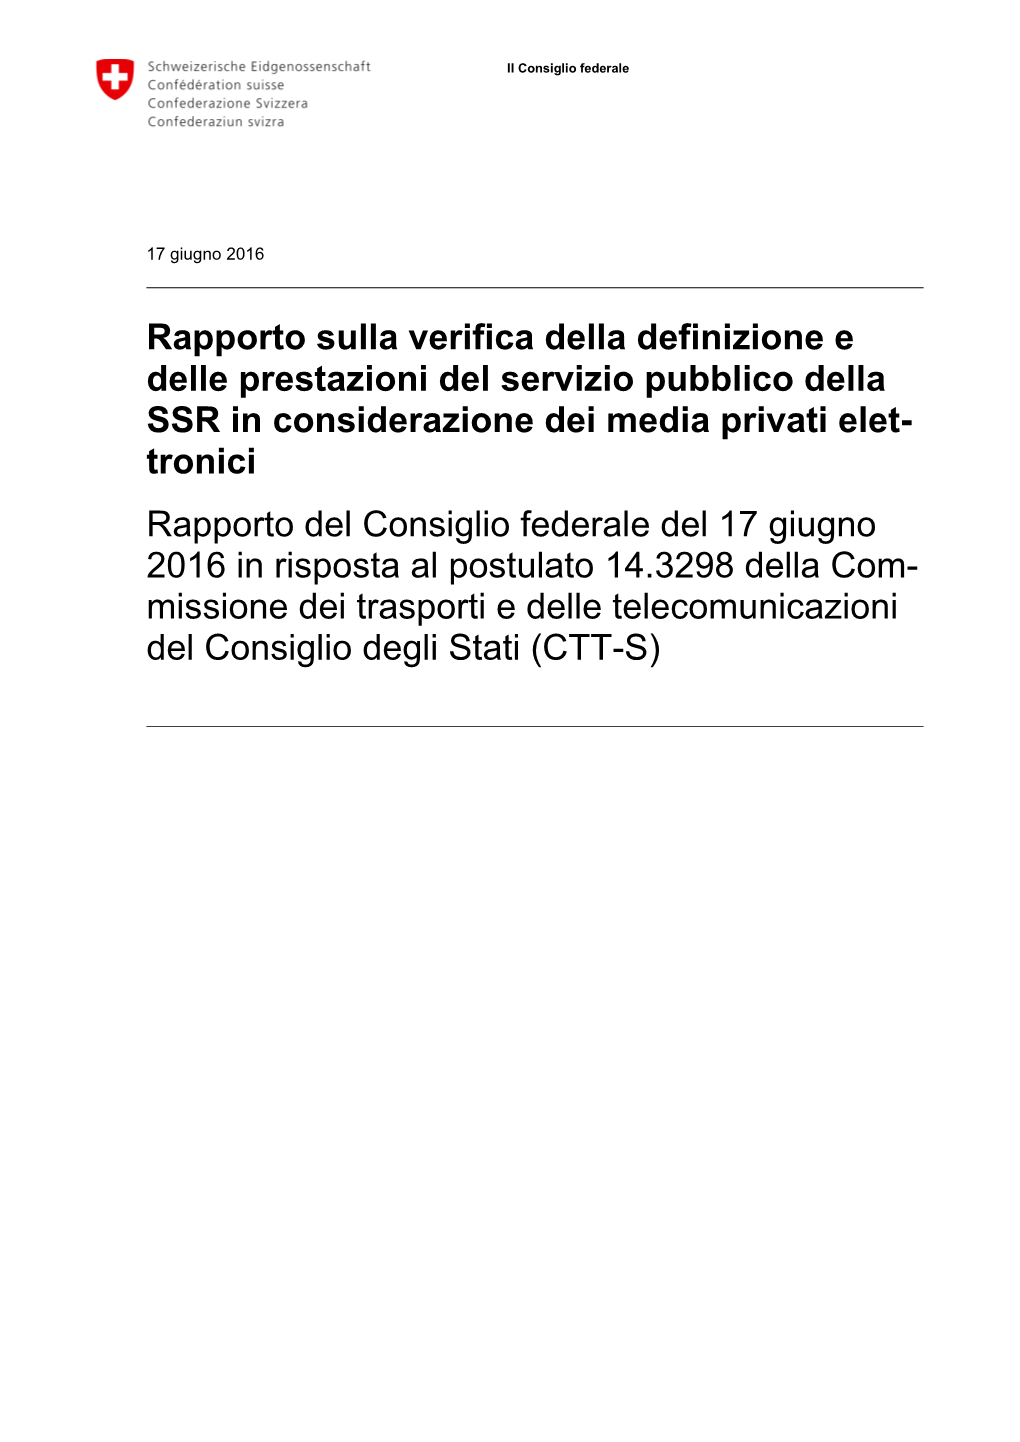 Rapporto Sulla Verifica Della Definizione E Delle Prestazioni Del Servizio Pubblico Della SSR in Considerazione Dei Media Privat